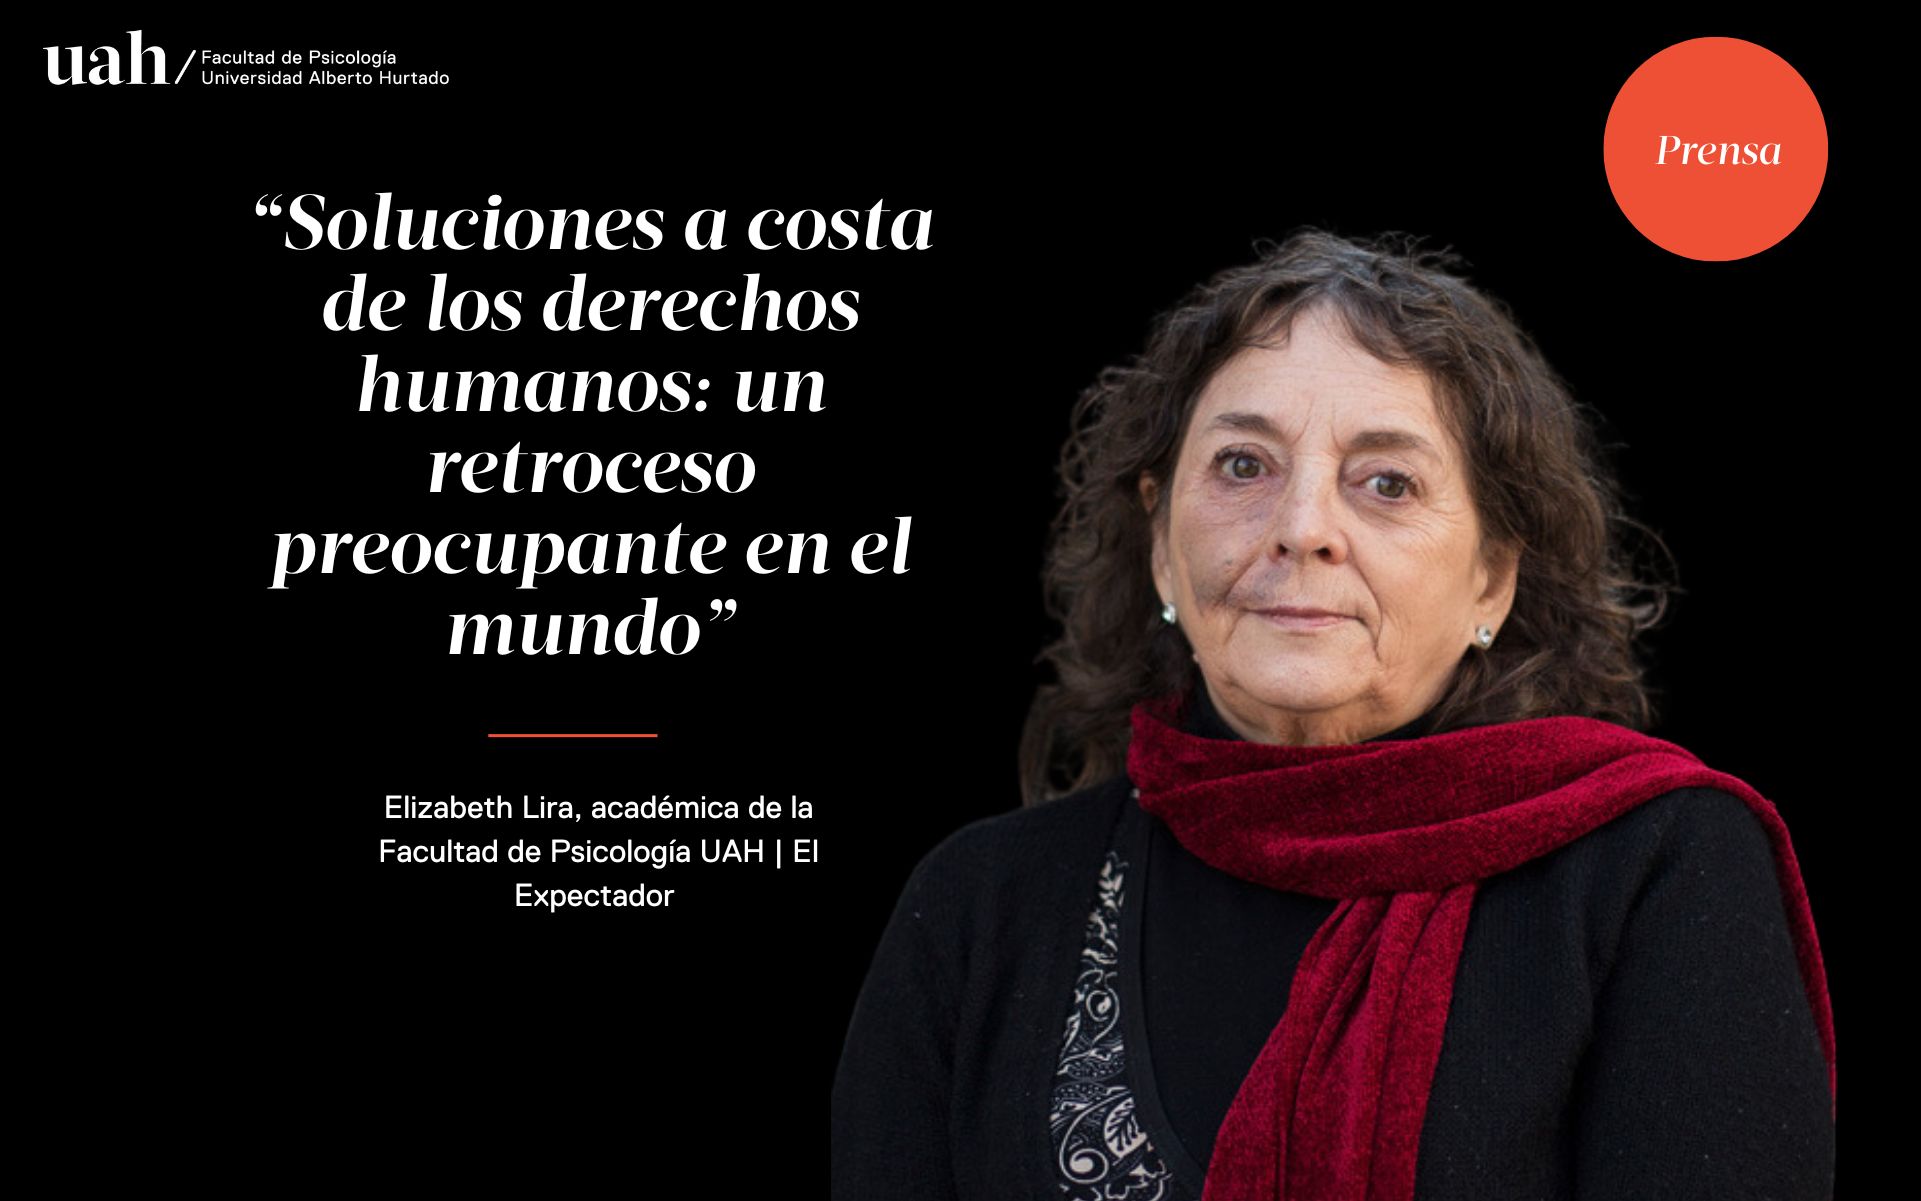 Elizabeth Lira concede entrevista a medio colombiano “El espectador” sobre Derechos Humanos